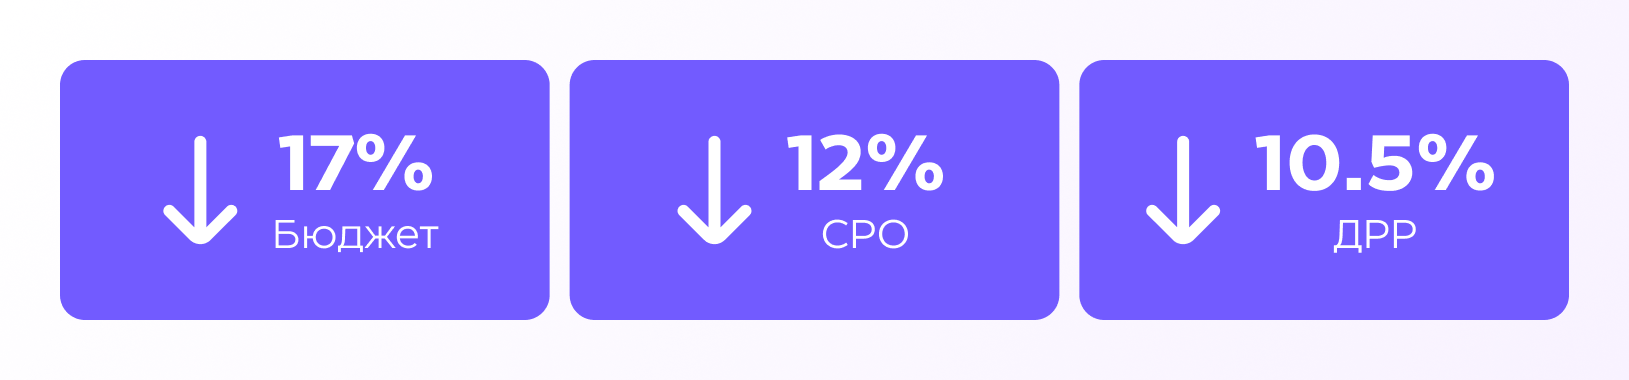 Грейдирование рекламных кампаний: как оценить эффективность более 900 запусков и снизить CPO на 12% — кейс